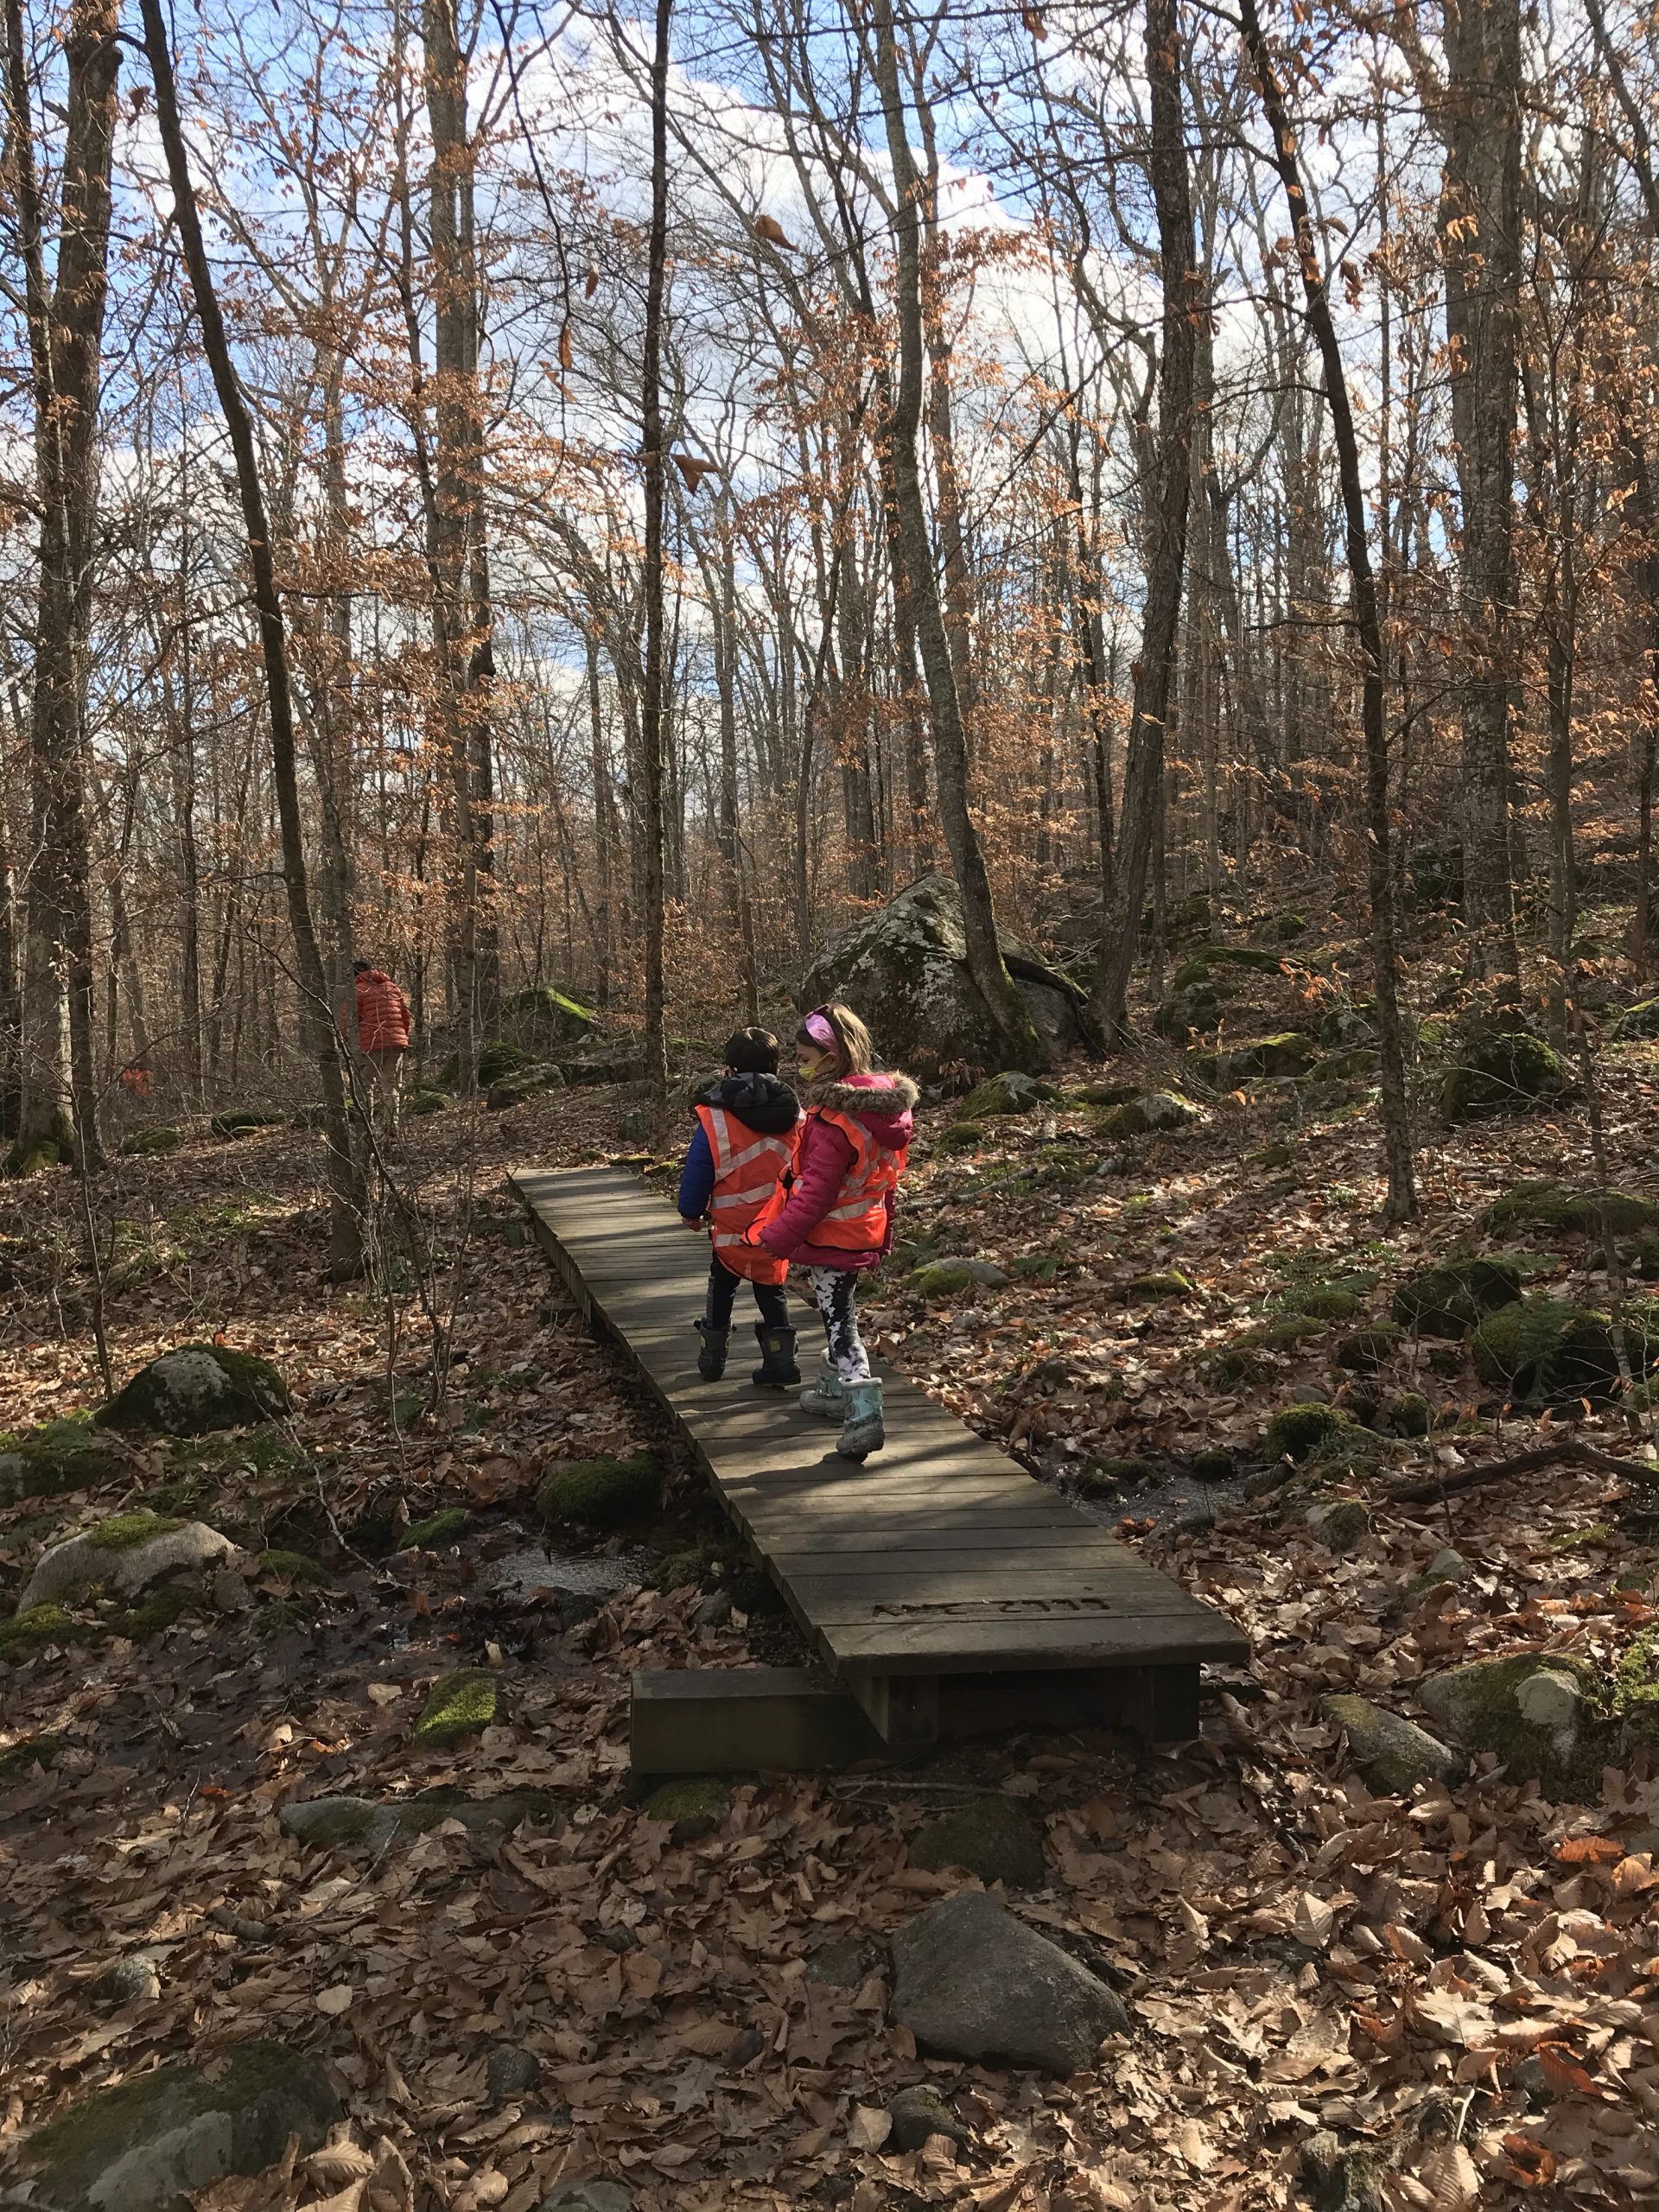 Ben Utter trail in West Greenwich, Rhode Island with kids